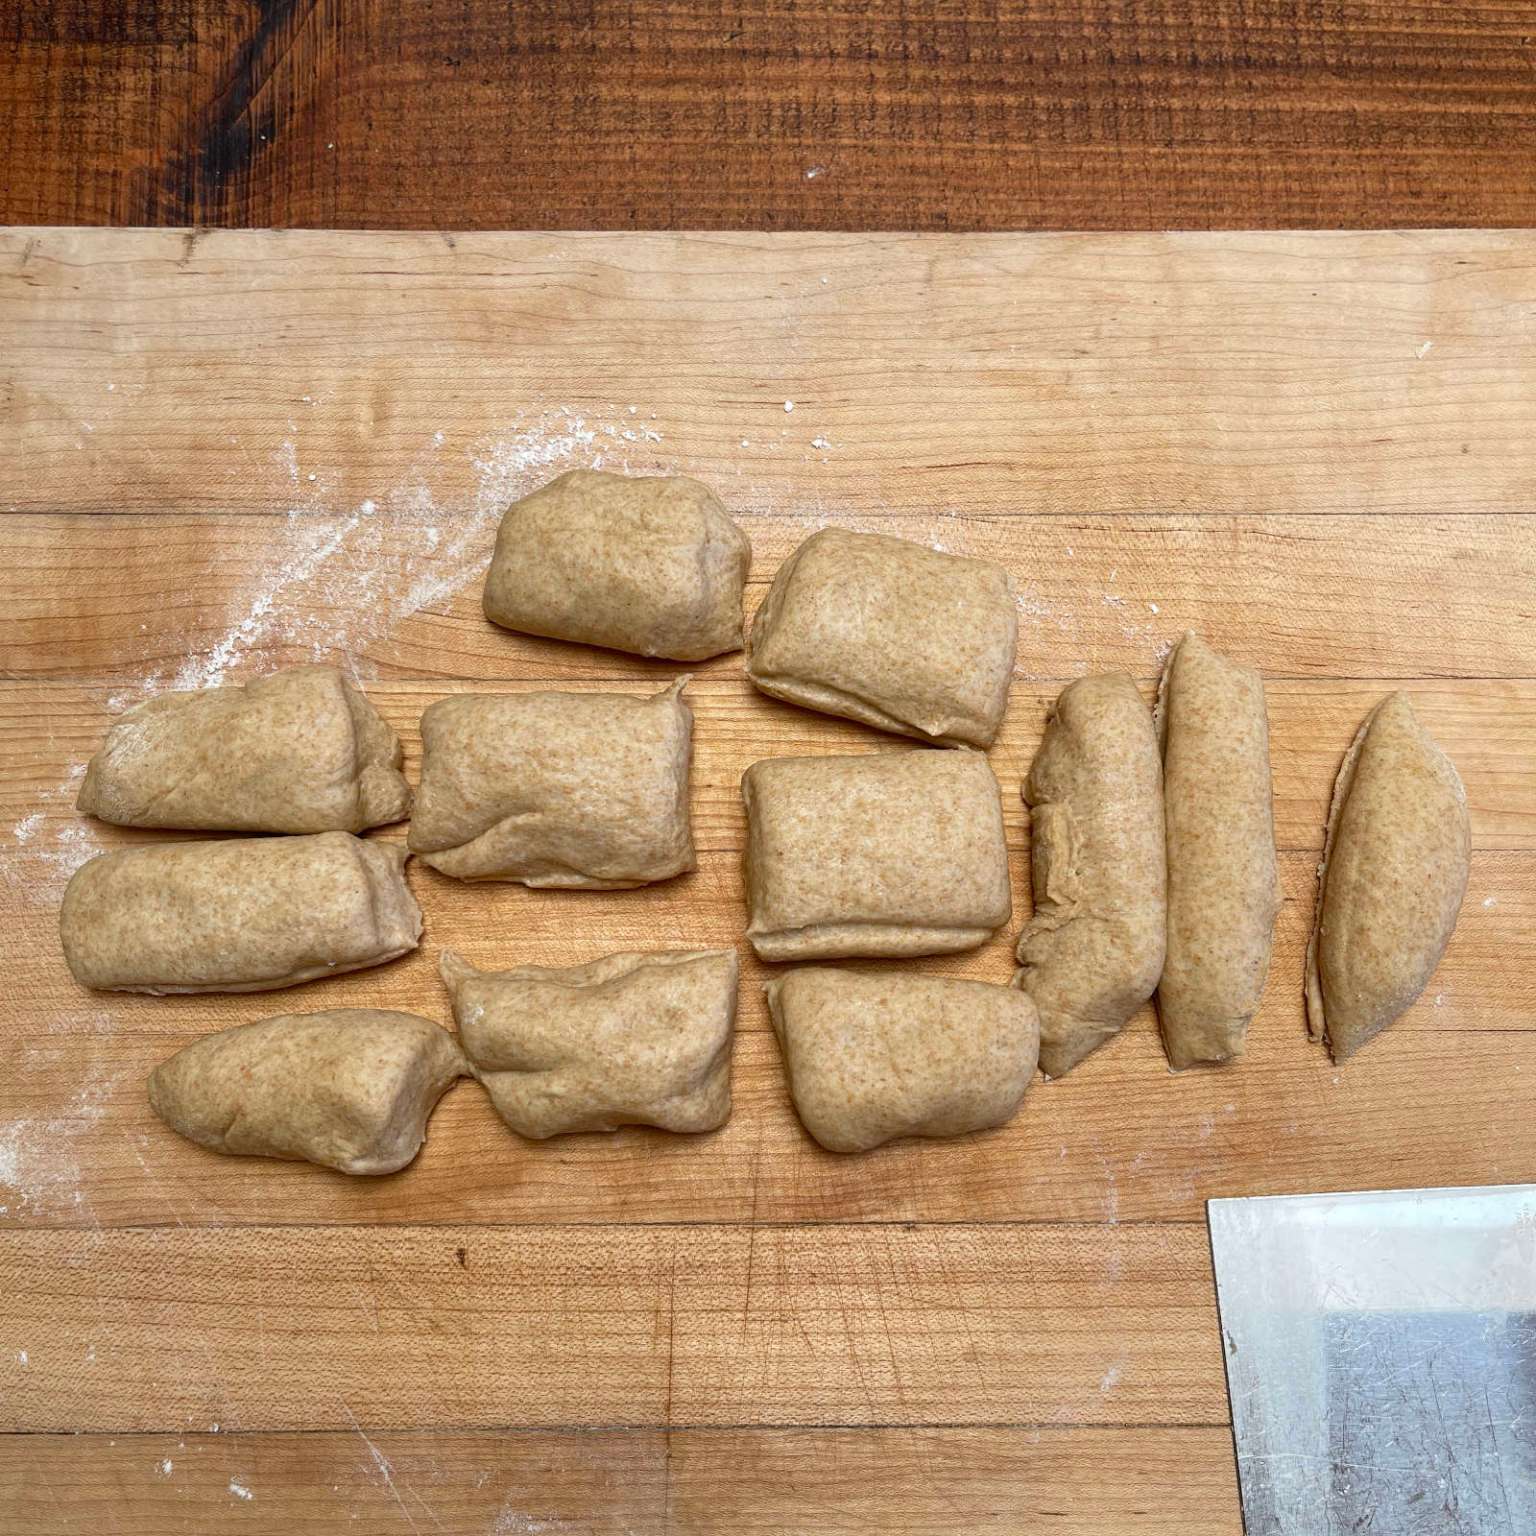 Dough has been cut into 12 pieces to make tortillas